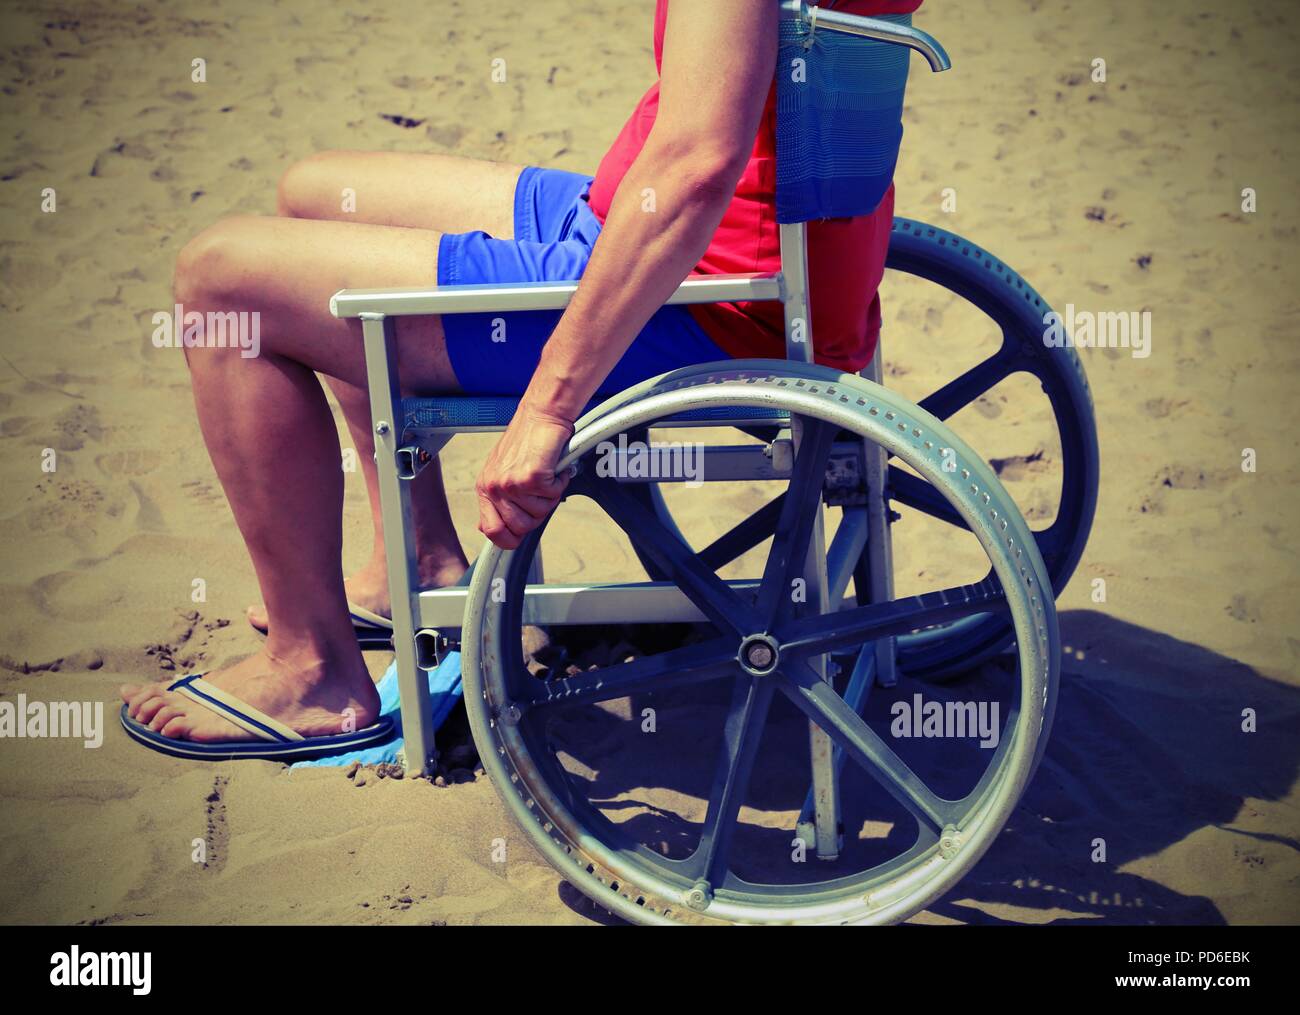 Giovane uomo su una sedia a rotelle speciale sulla spiaggia del mare con effetto vintage Foto Stock